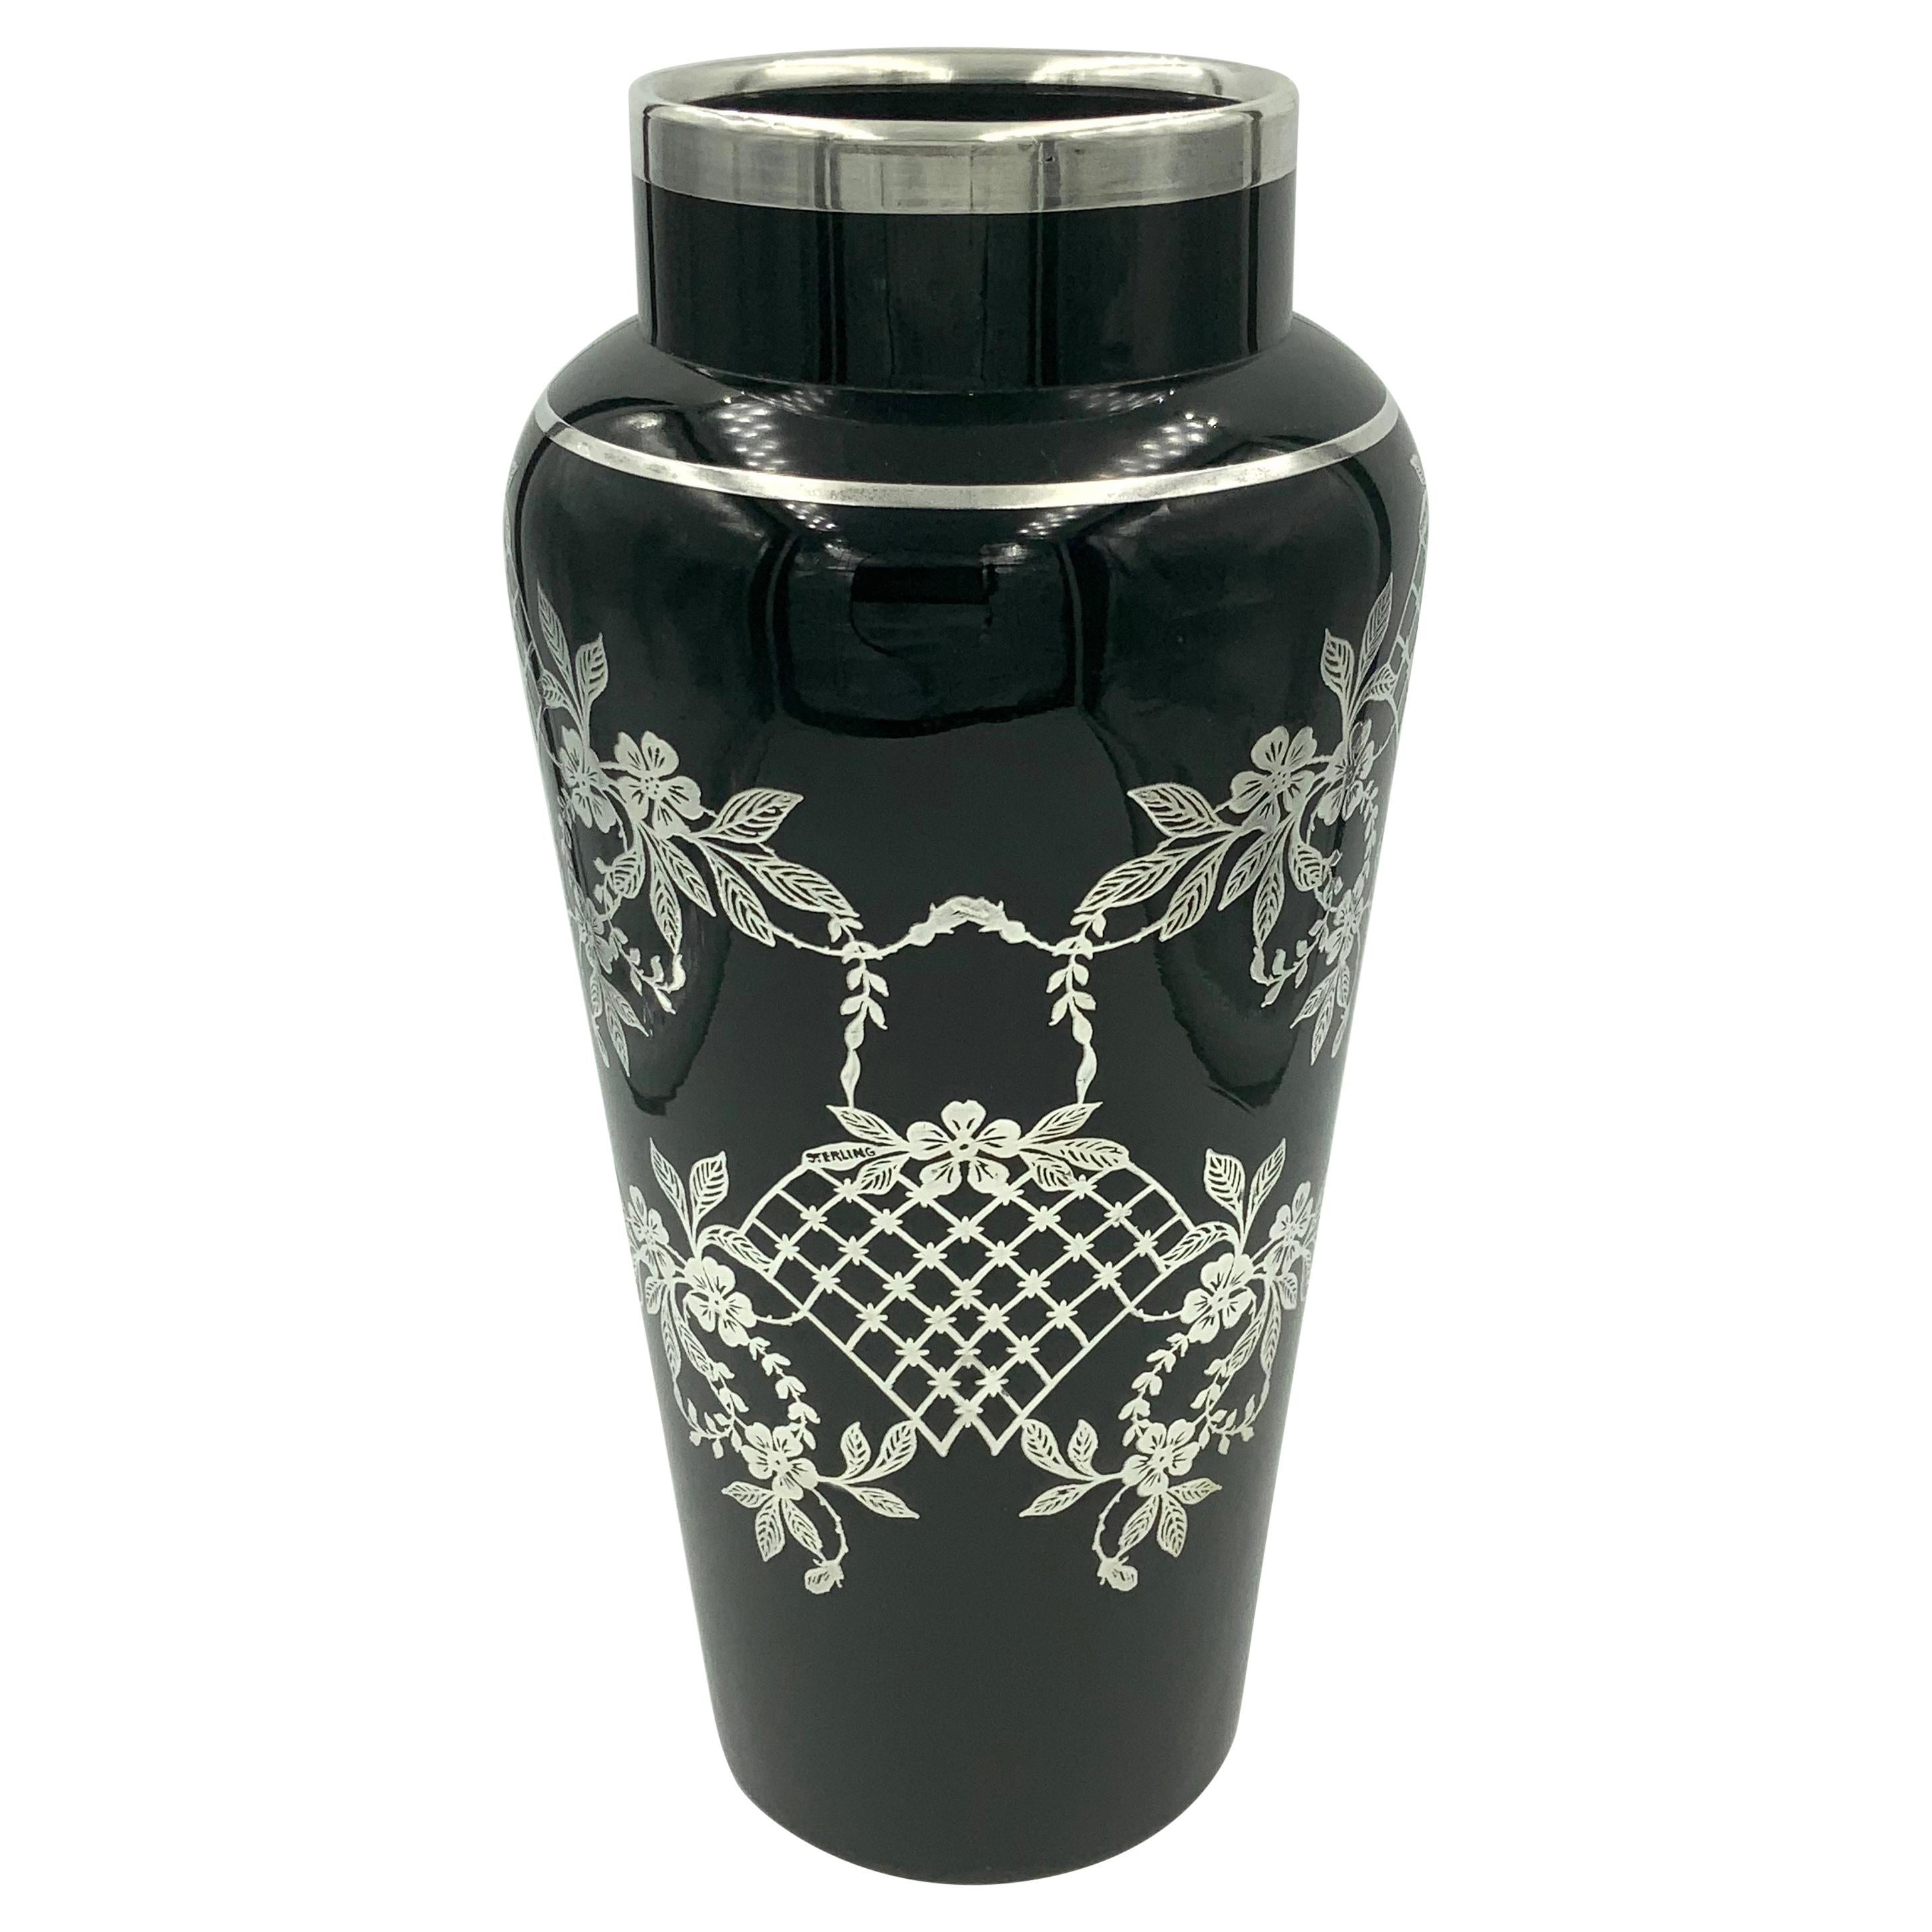 Lattice Flower Floral Sterling Silver Overlay Black Amethyst Glass Vase For Sale